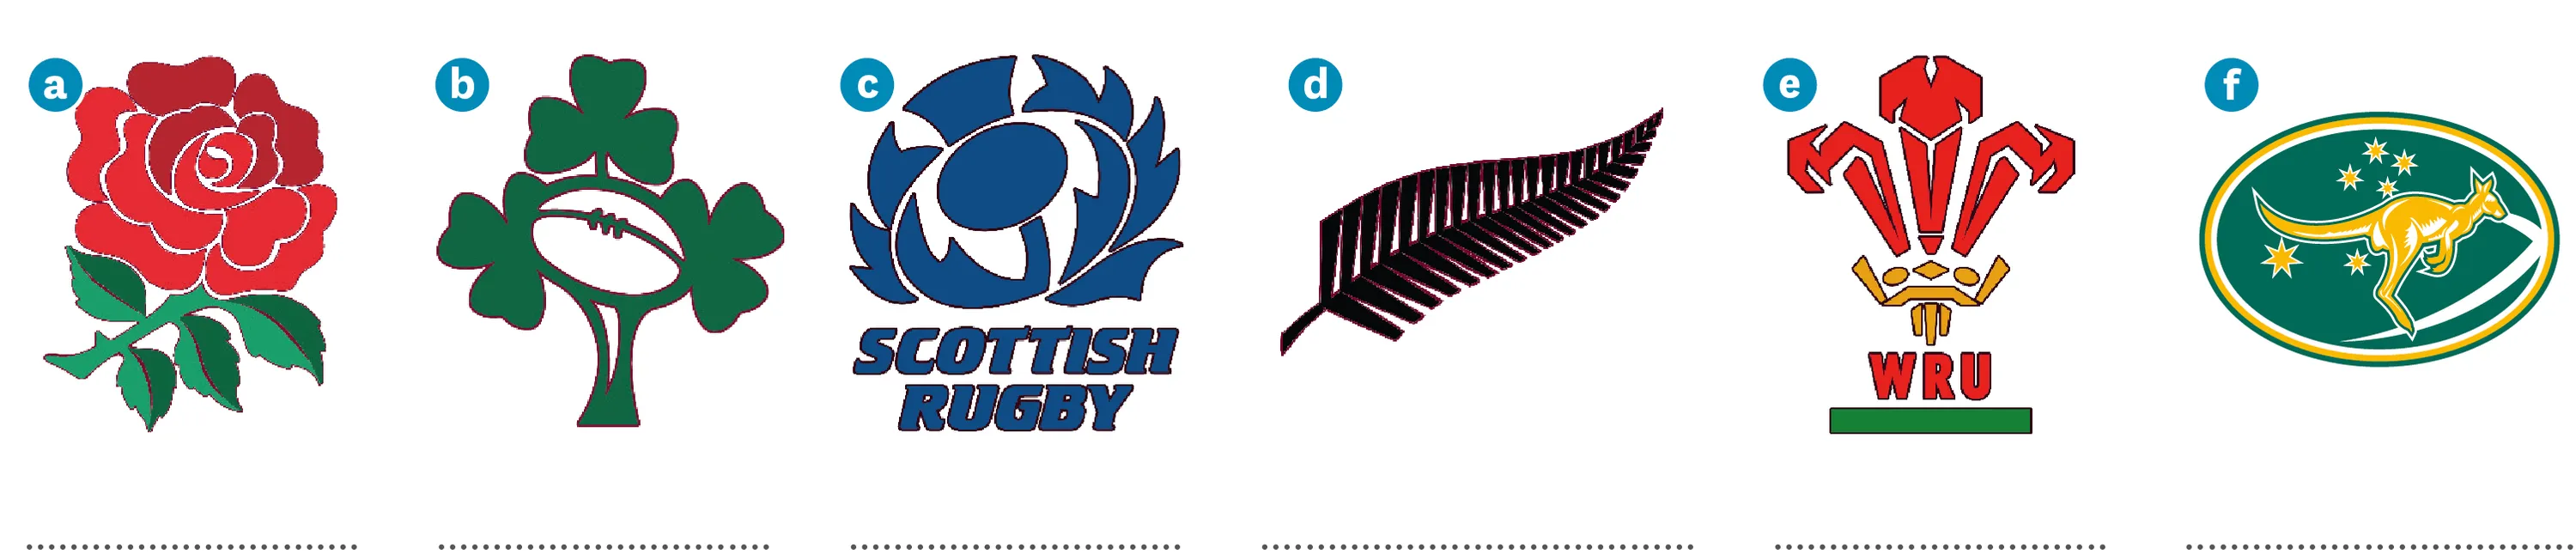 6 logos d'équipes de rugby, a - une rose, b - trois trèfles et un ballon de rugby, un dandelion bleu, une plume noire, trois langue rouge et un kangourou doré sur fond vert.